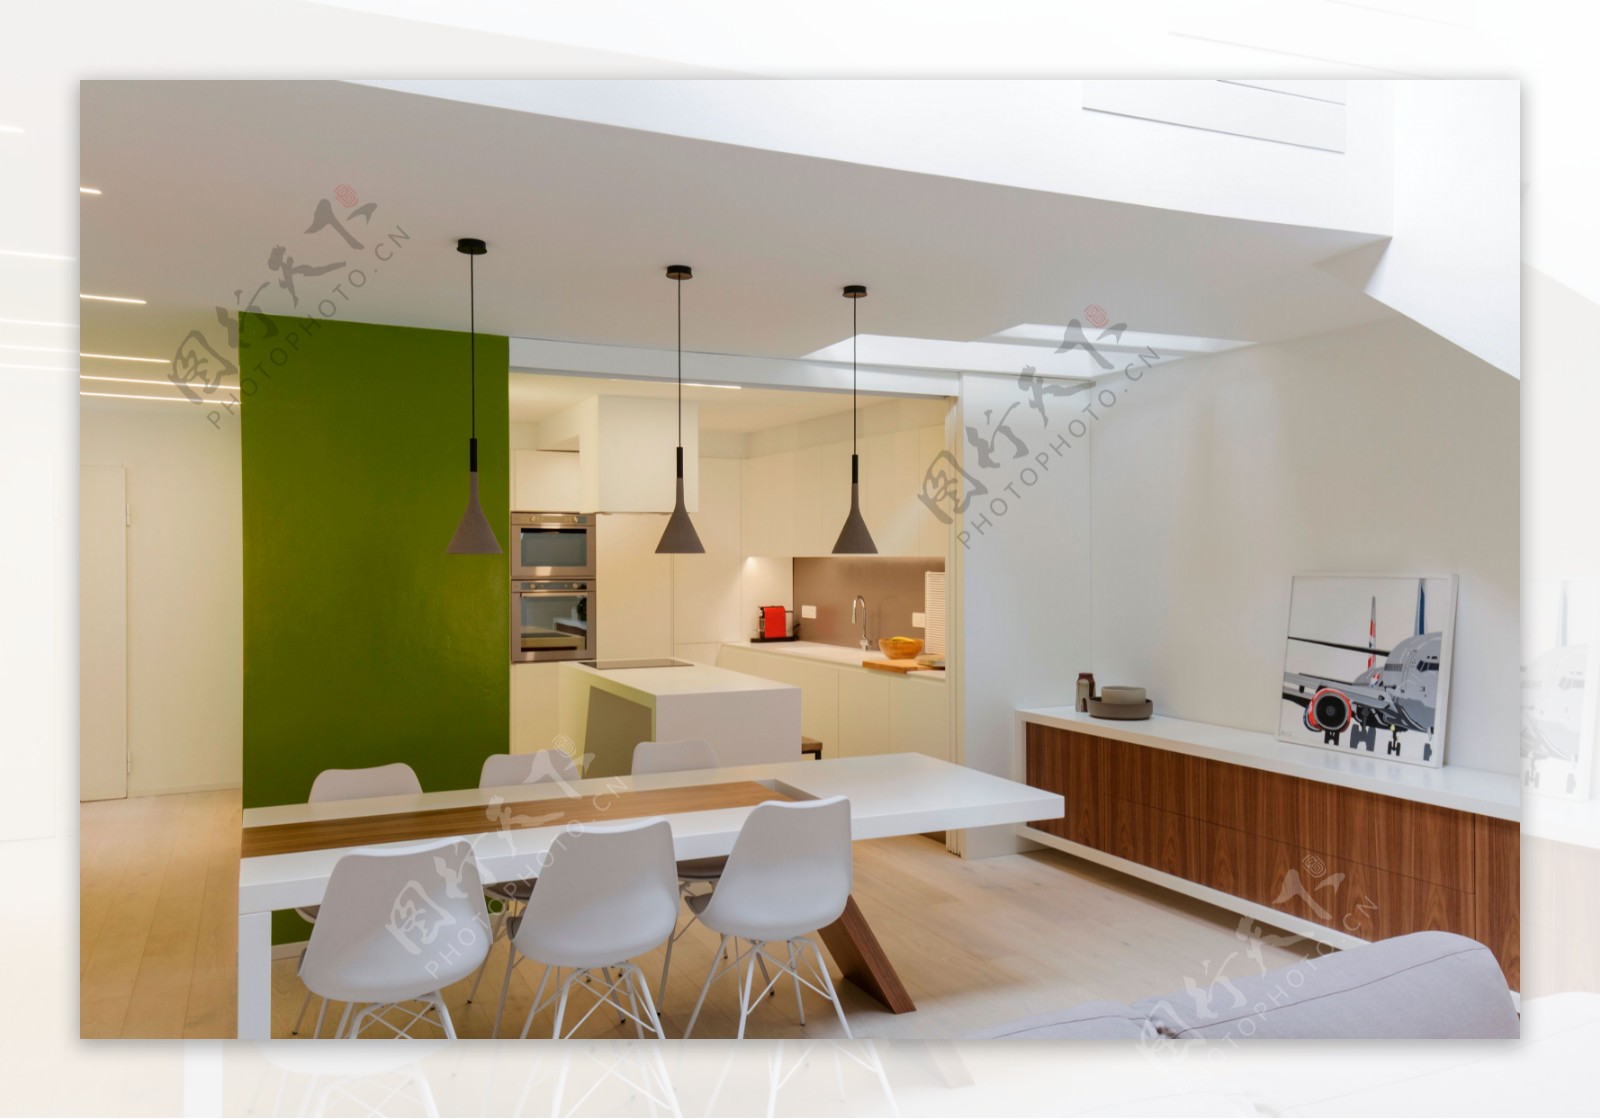 现代简约客厅绿色背景墙室内装修效果图